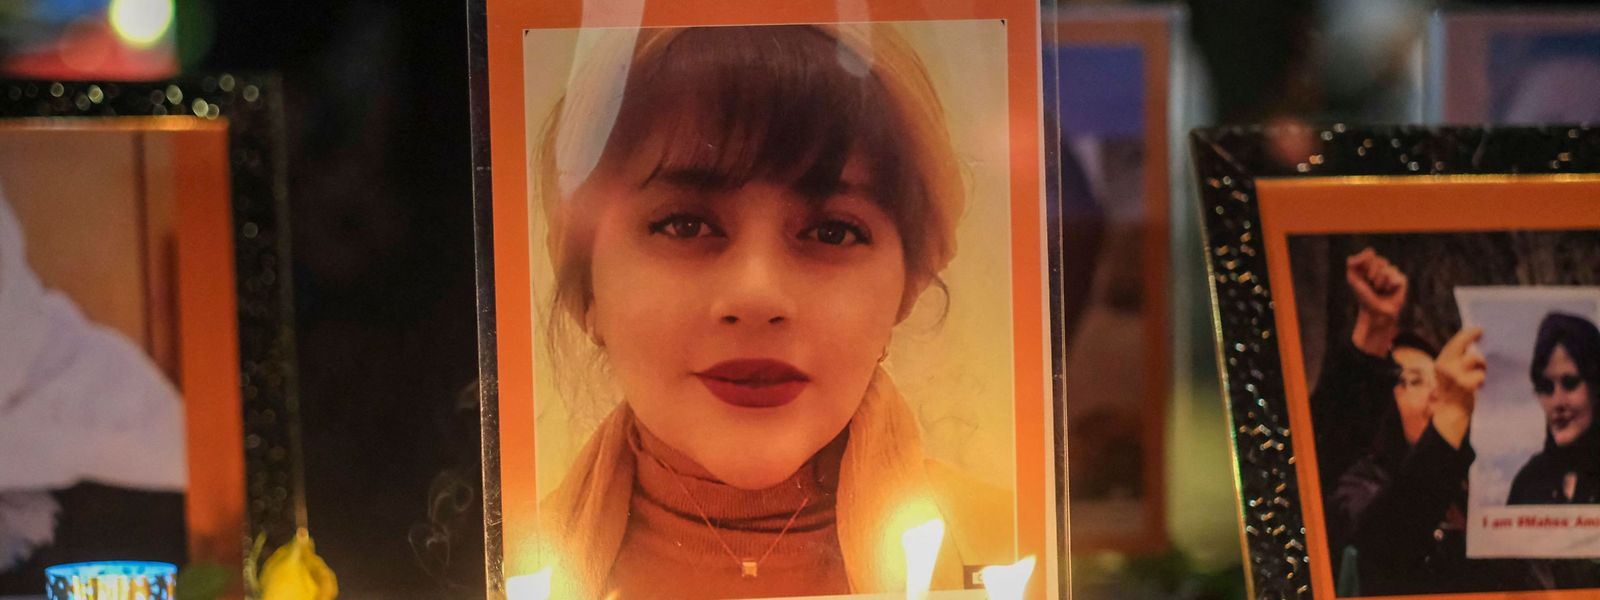 Fotos und Kerzen in Los Angeles, USA, im Gedenken an Mahsa Amini, jener jungen Frau, die im Iran unter ungeklärten Umständen in Polizeigewahrsam ums Leben kam.